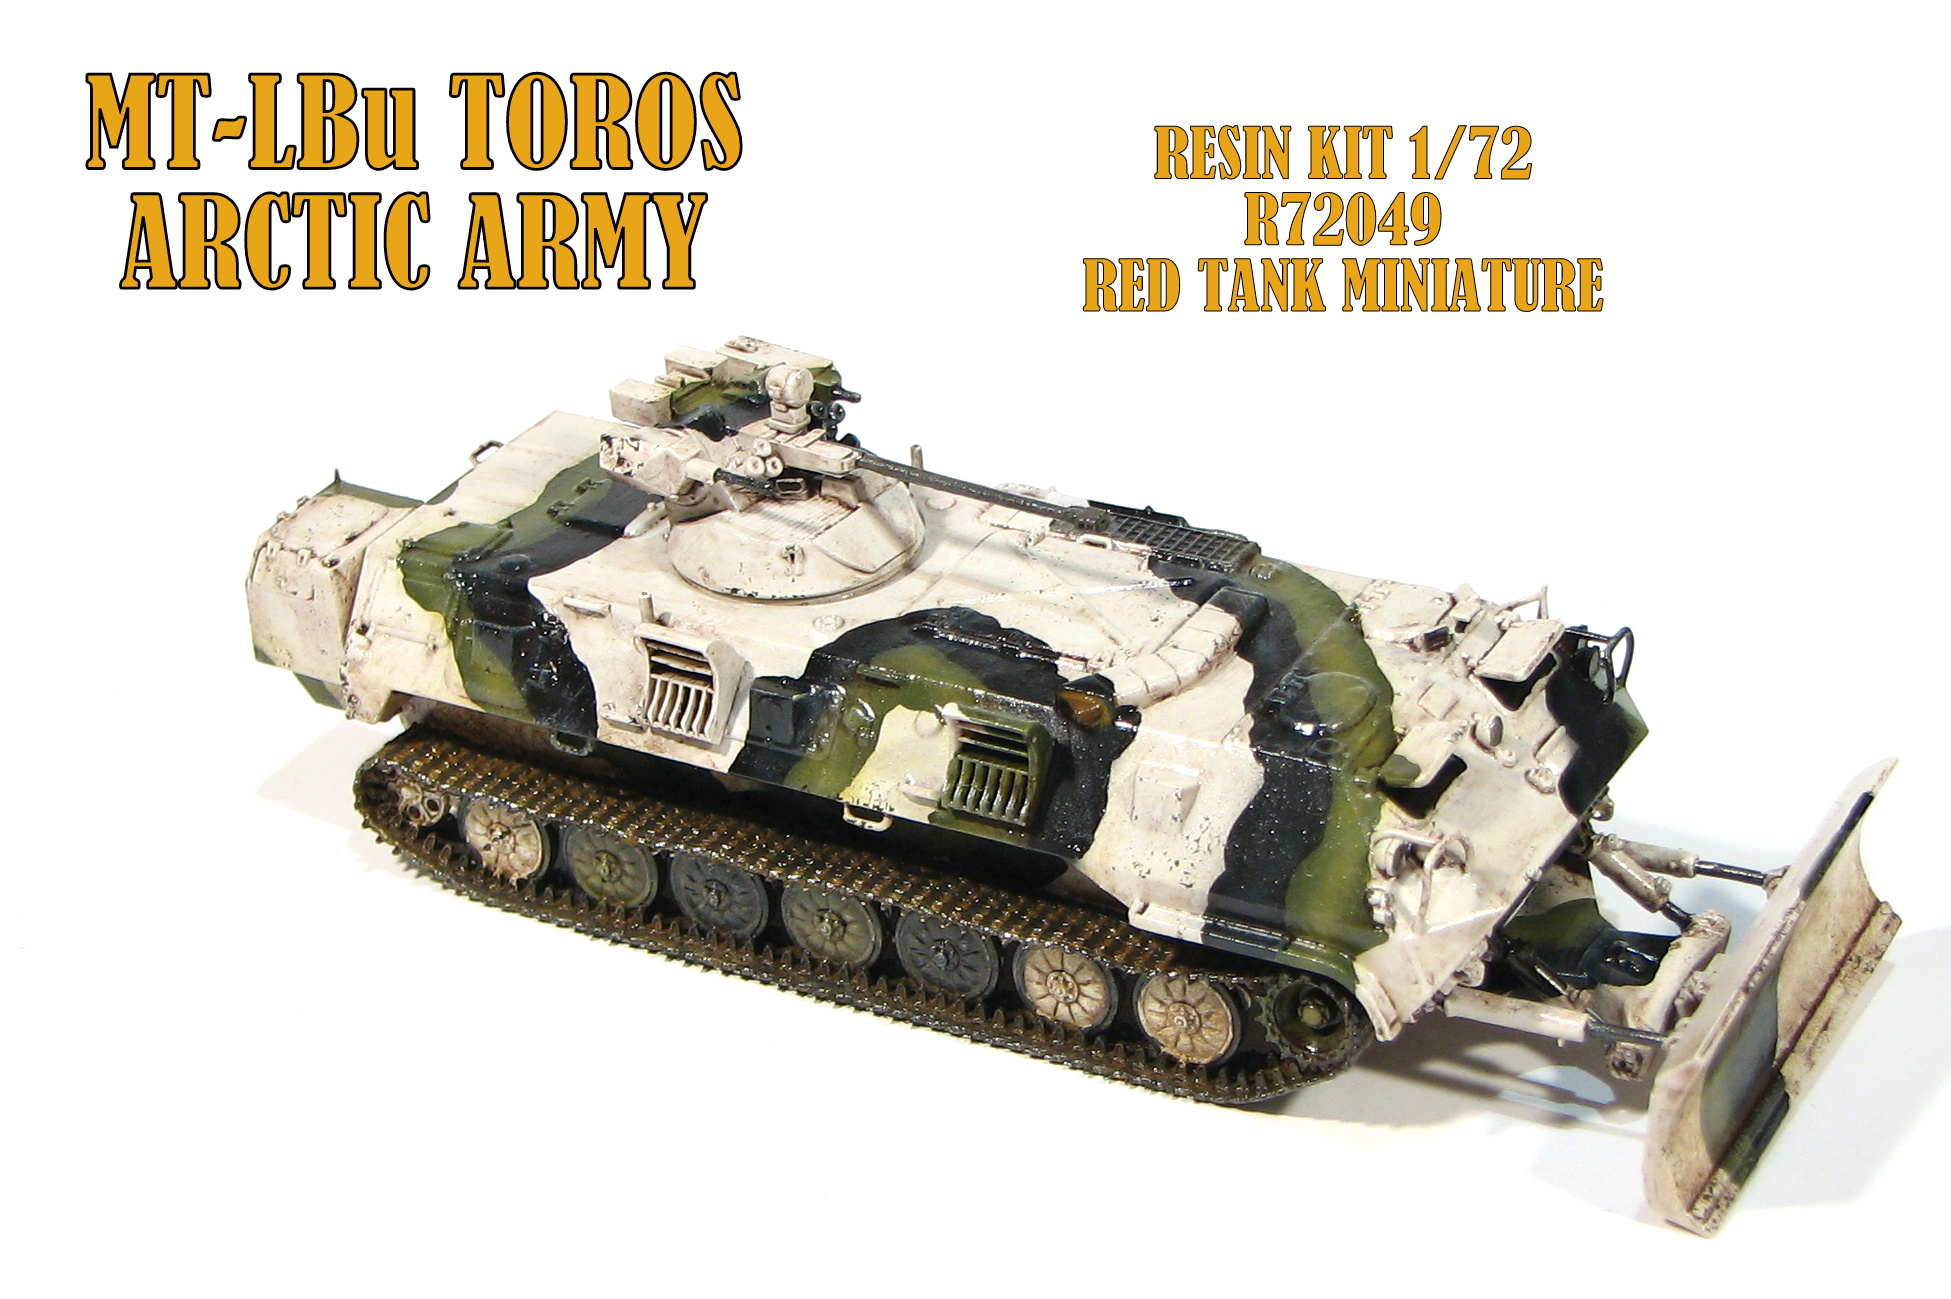 MT-LBu TOROS (Arctic Army)